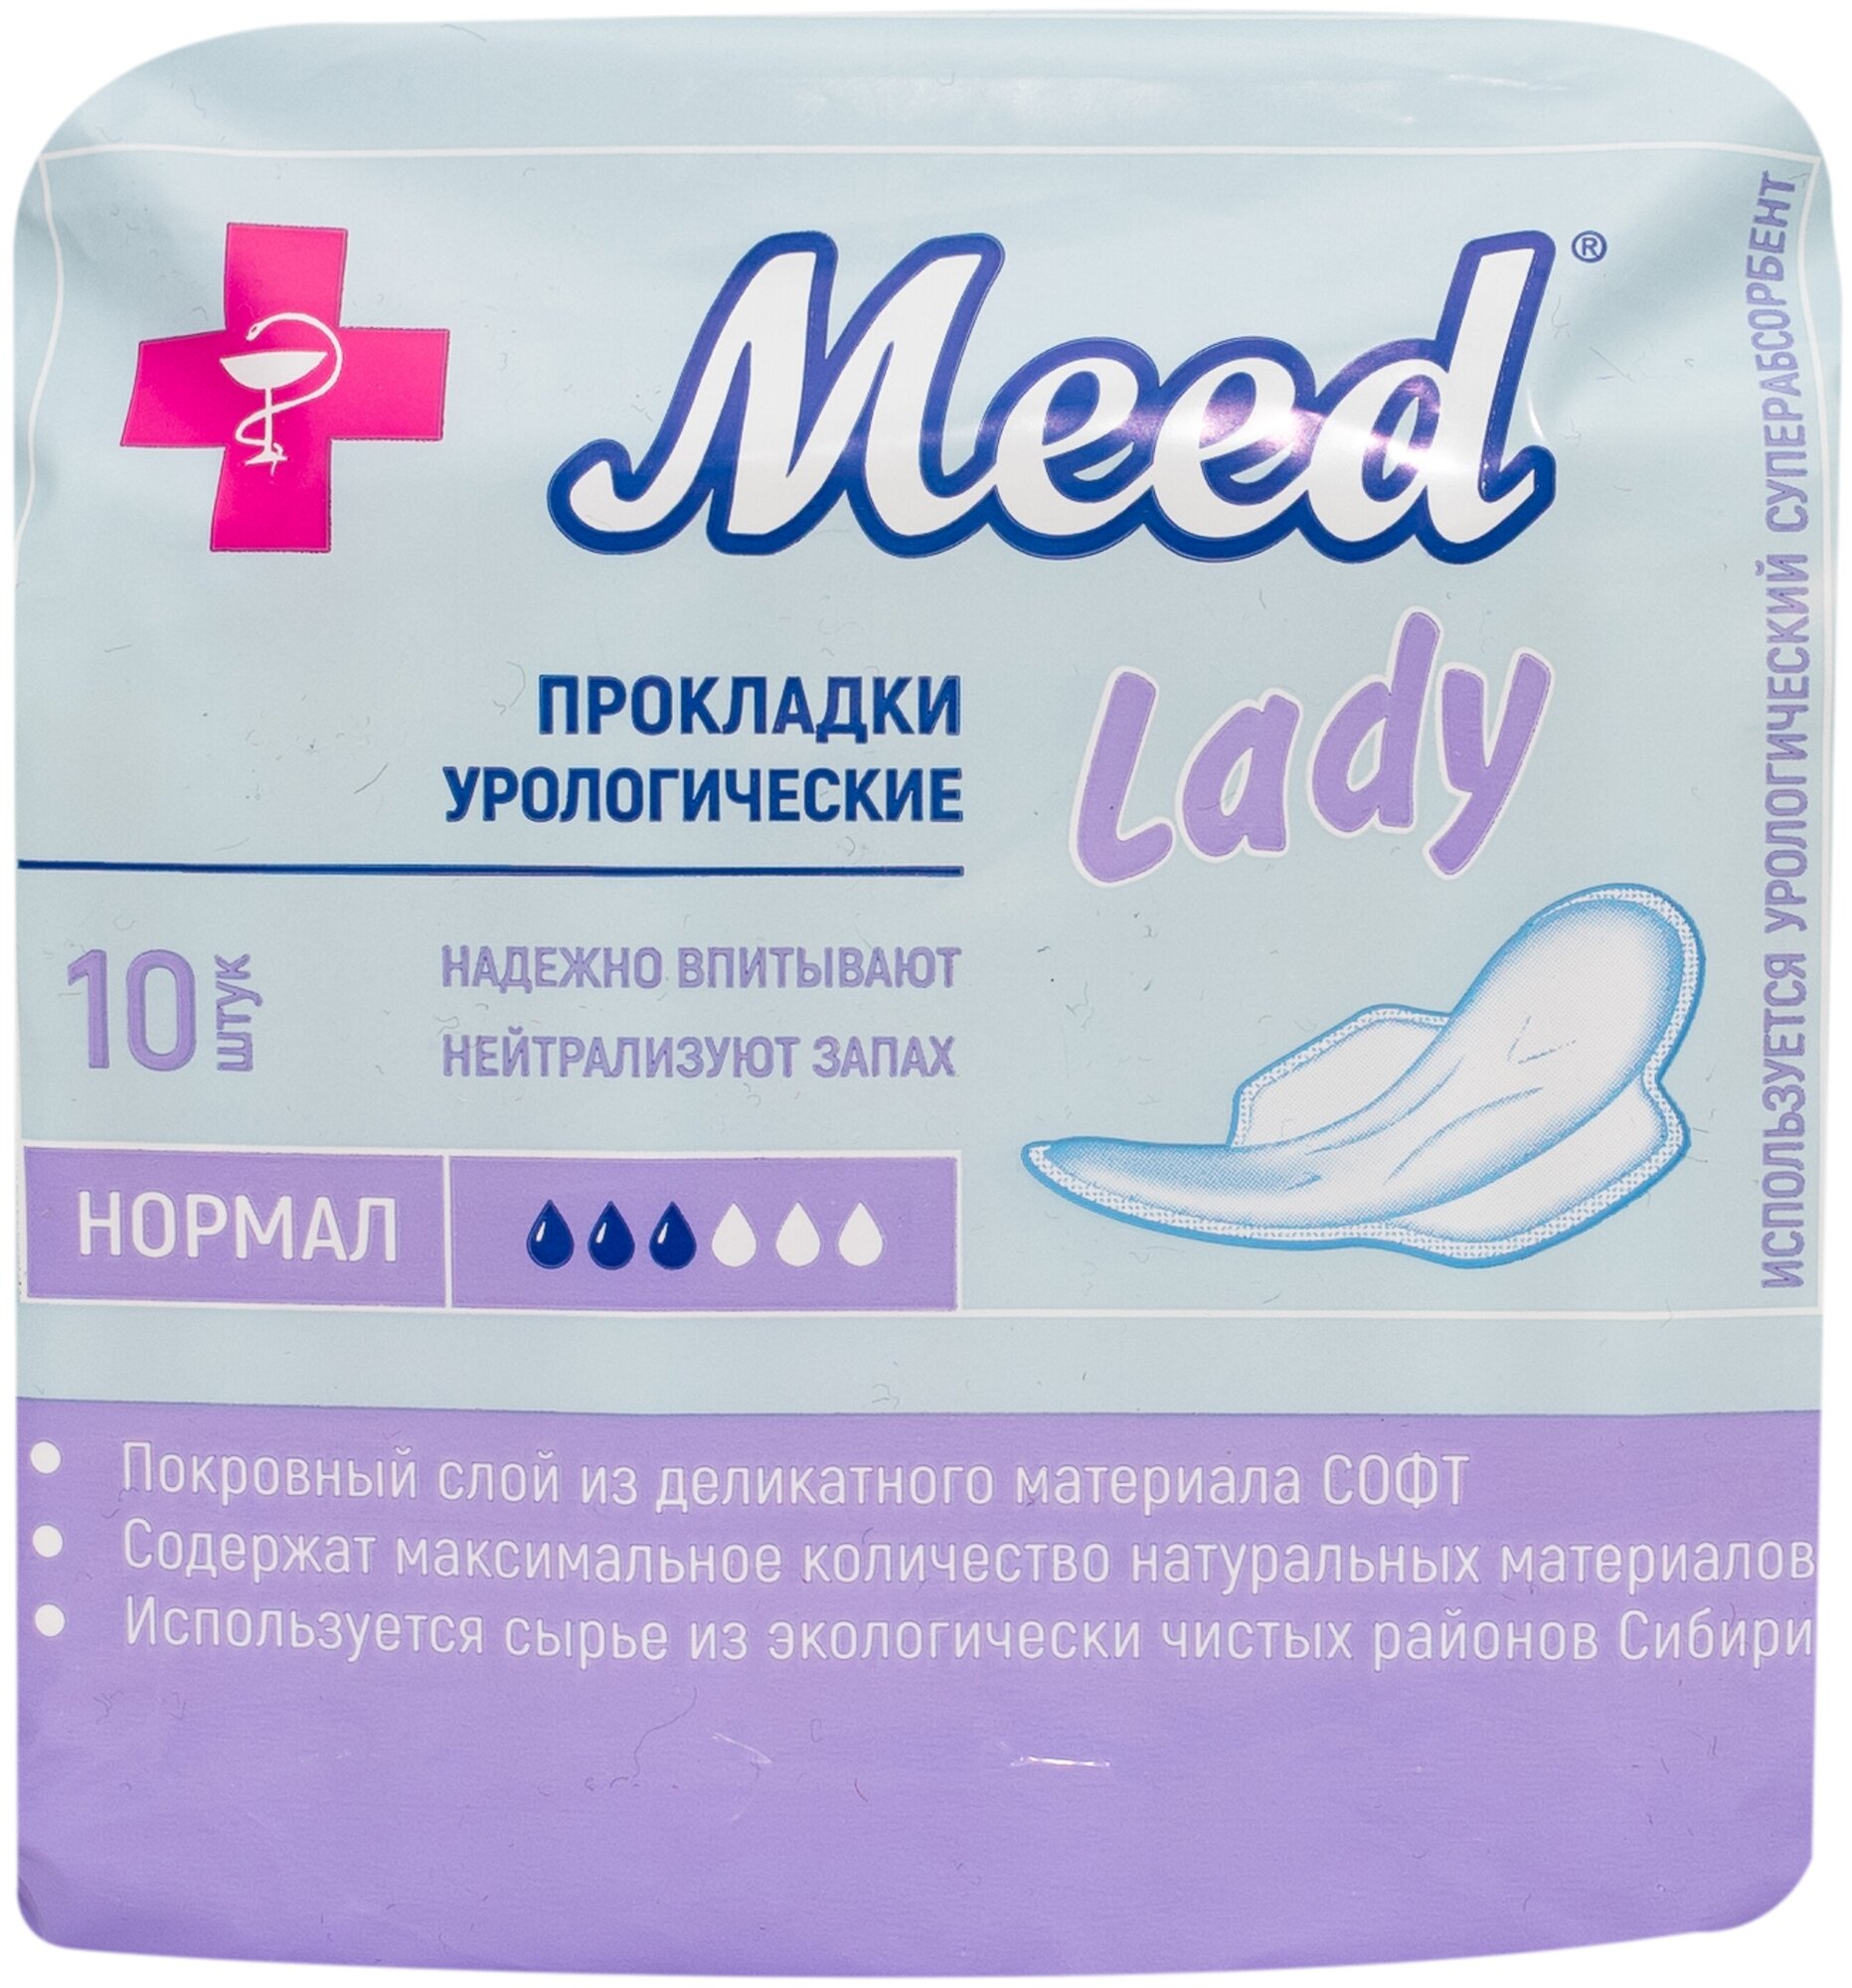 Прокладки женские урологические Lady, (нормал плюс )3 упаковки по 10 шт.